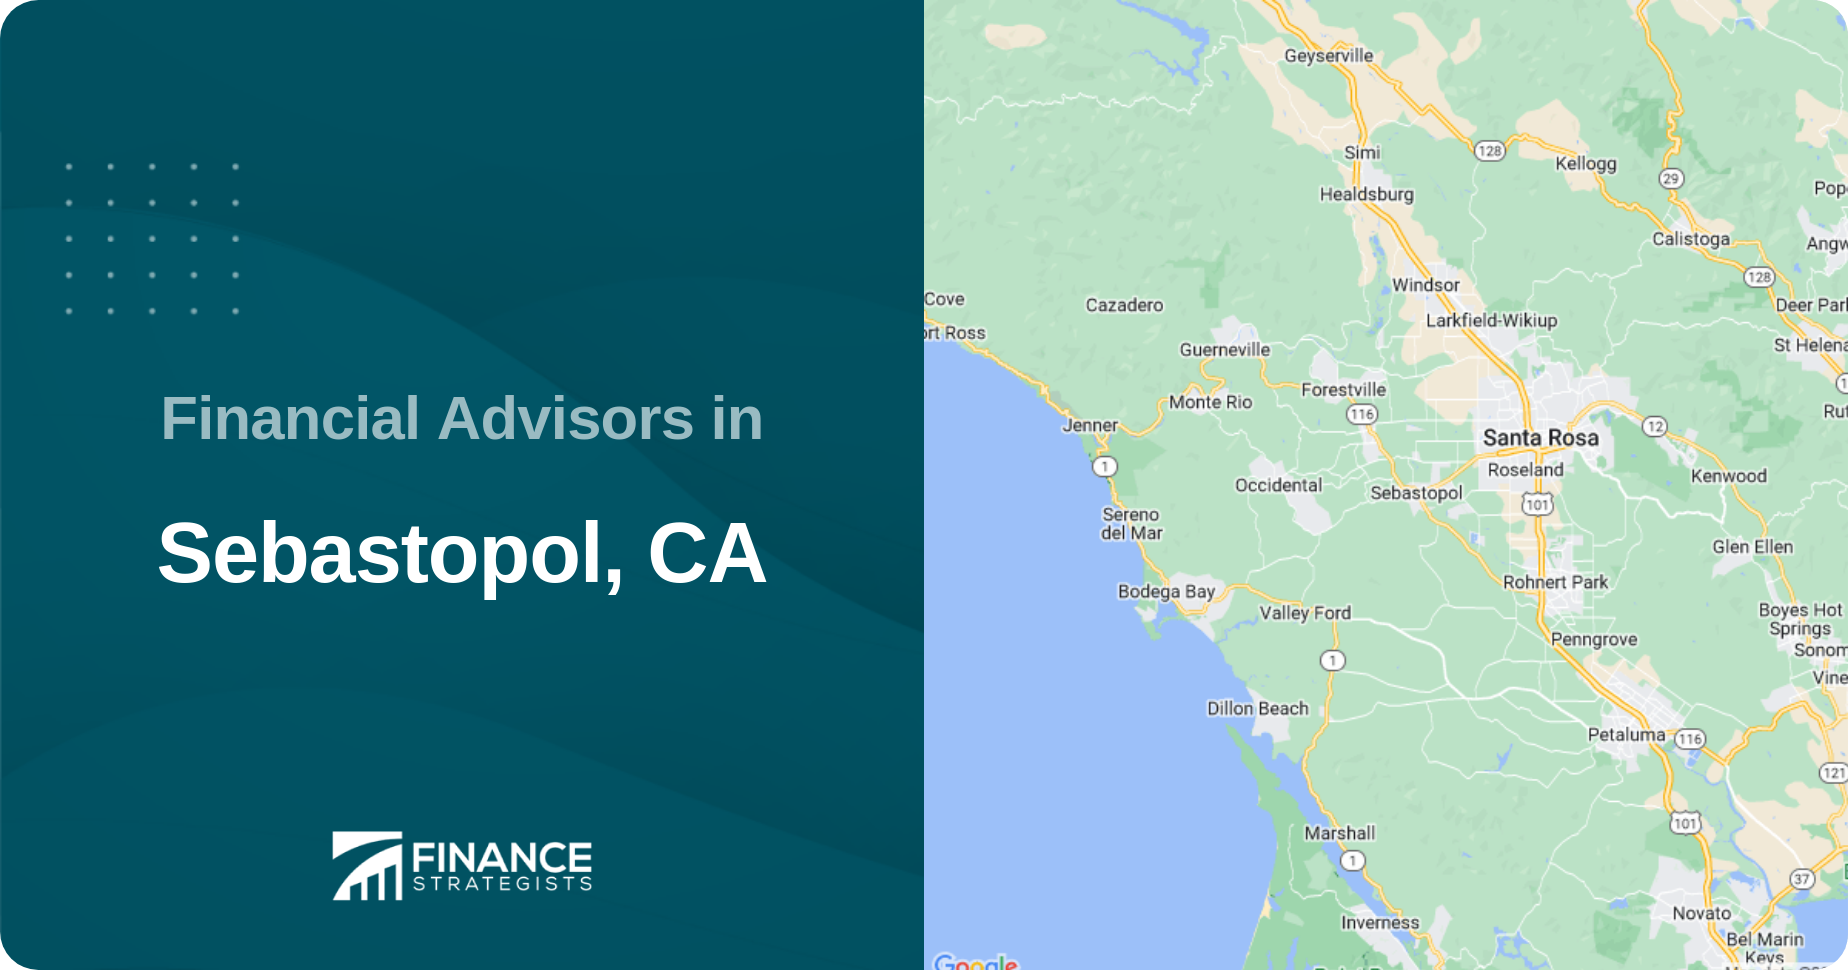 Financial Advisors in Sebastopol, CA